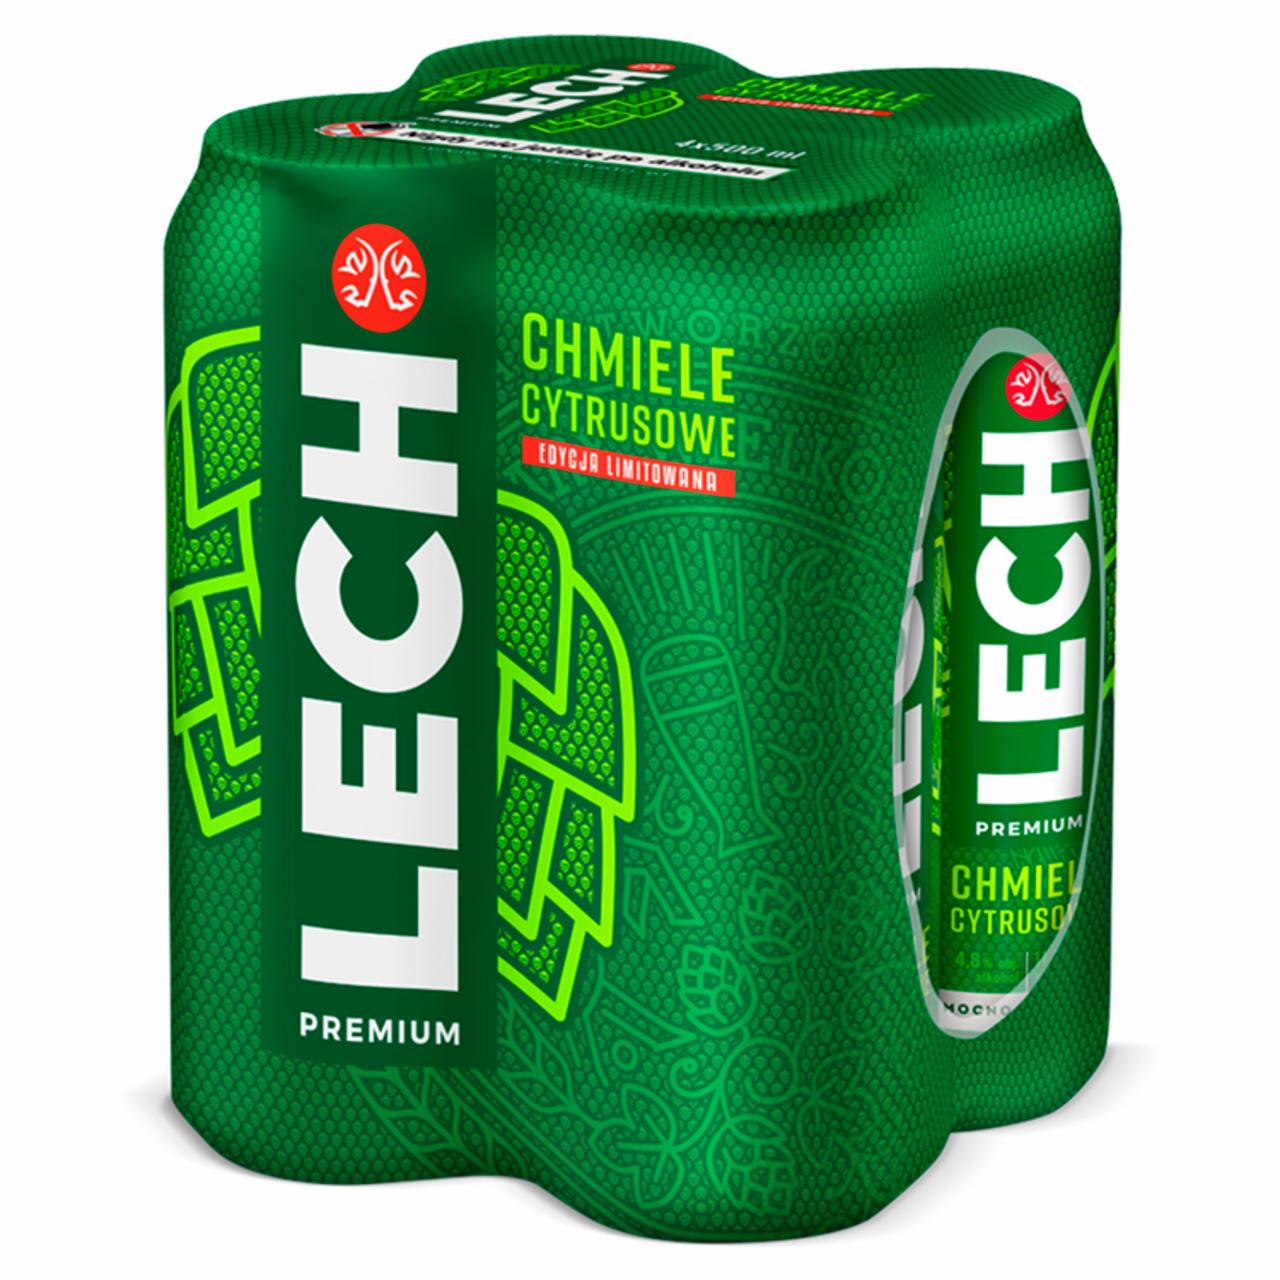 Zdjęcia - Lech Premium Piwo jasne chmiele cytrusowe 4 x 500 ml